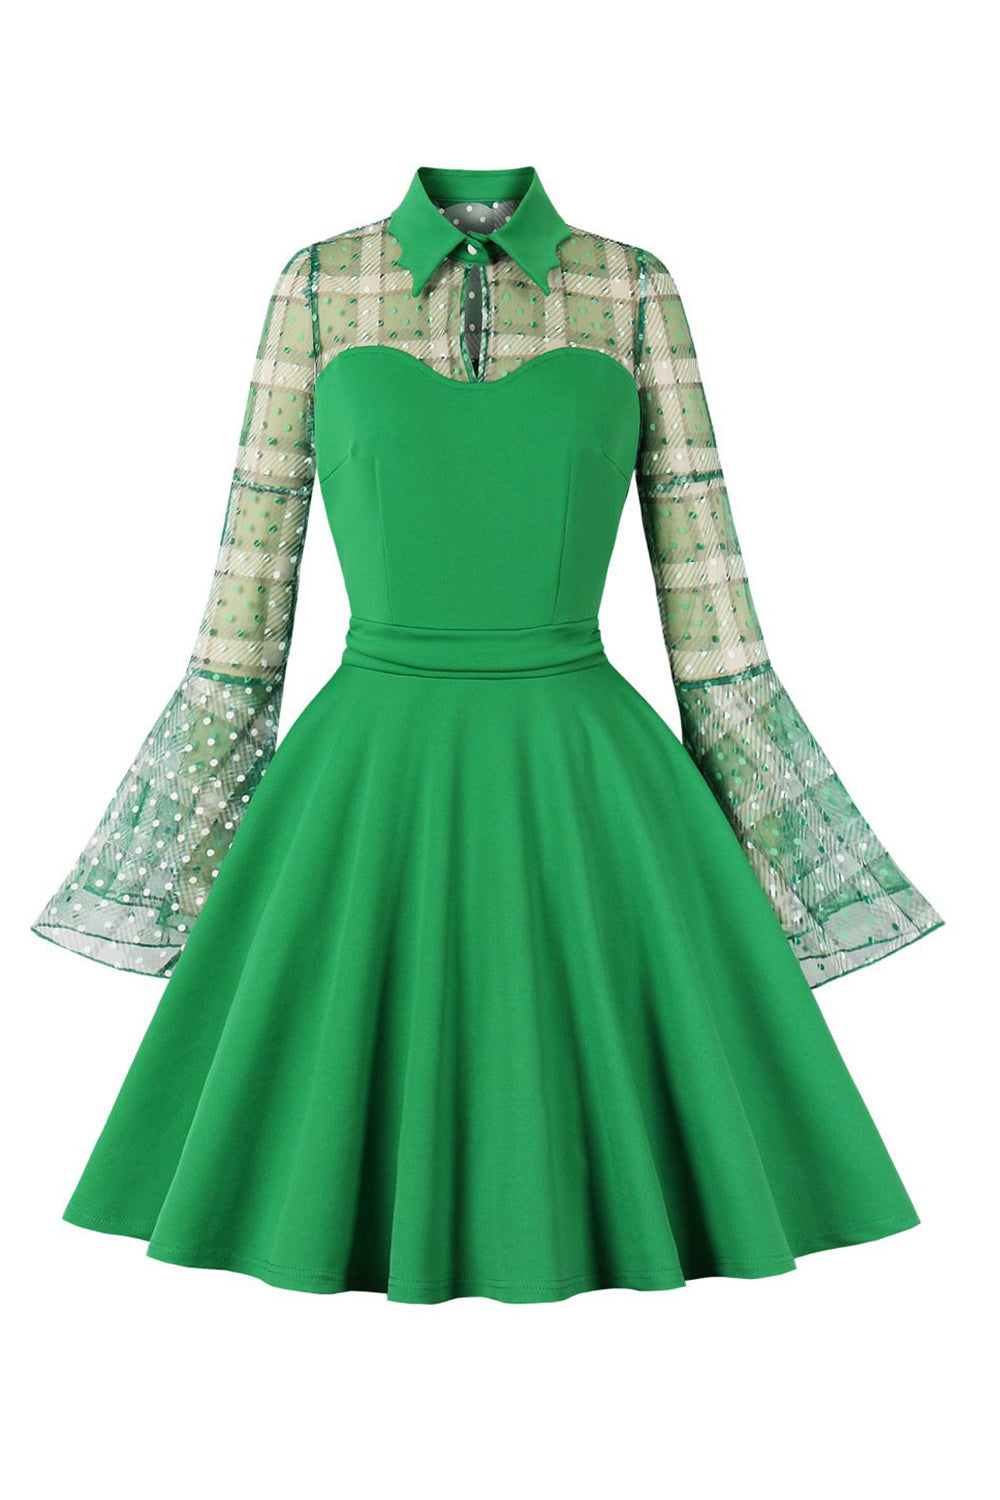 Plaid Langærmer Grøn vintage kjole